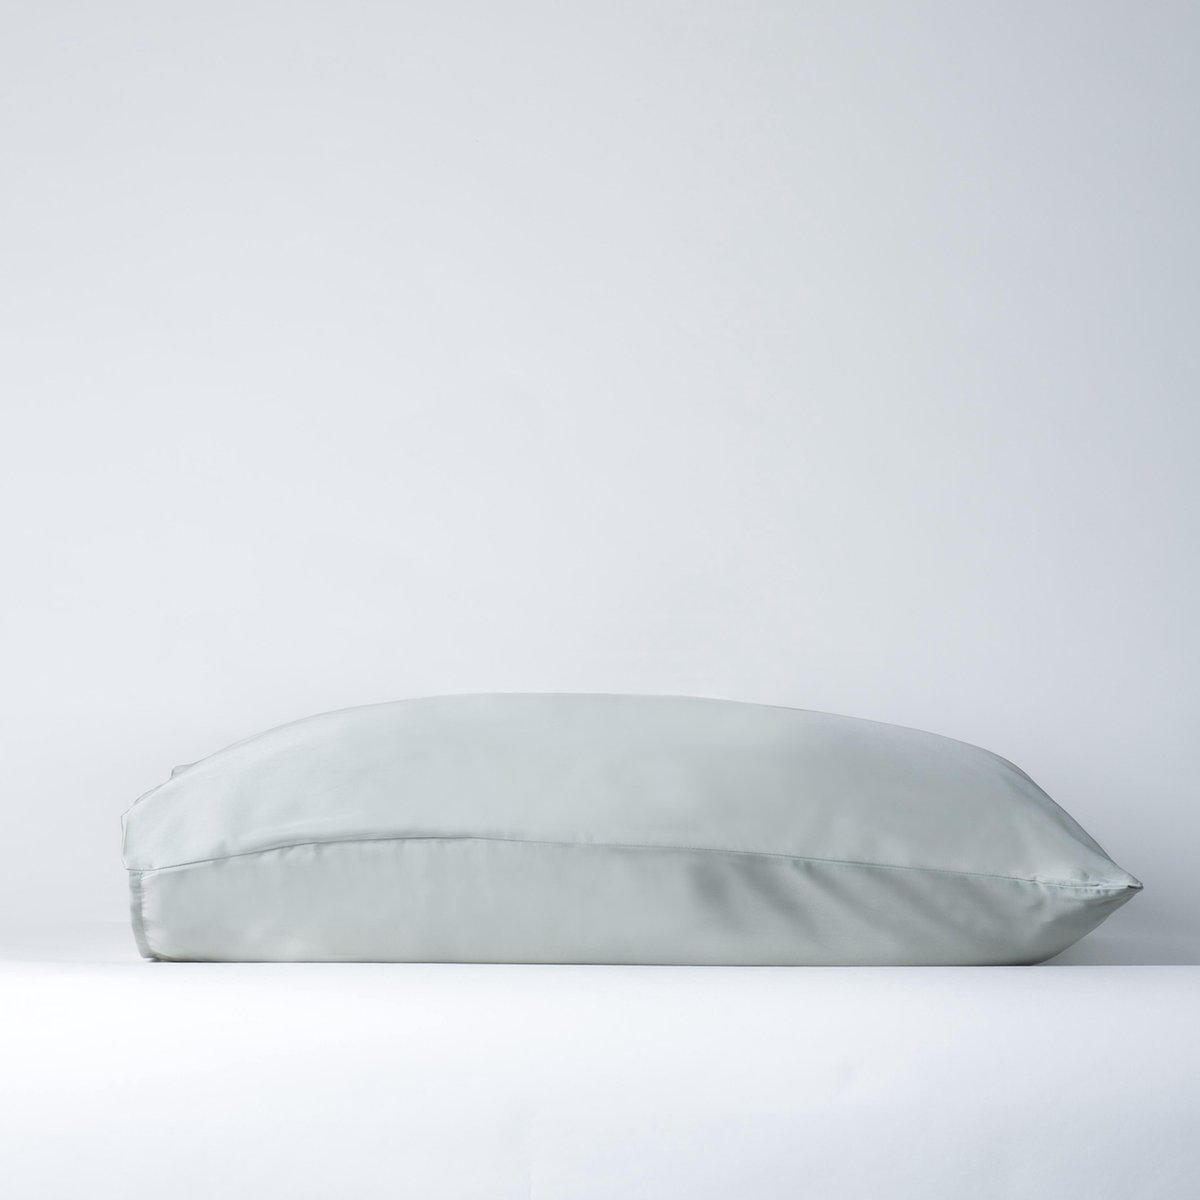 Coco & Cici - Tencel kussensloop - 60 x 70 - zonder volant - groen grijs - beauty pillow - zacht, luxe en duurzaam beddengoed